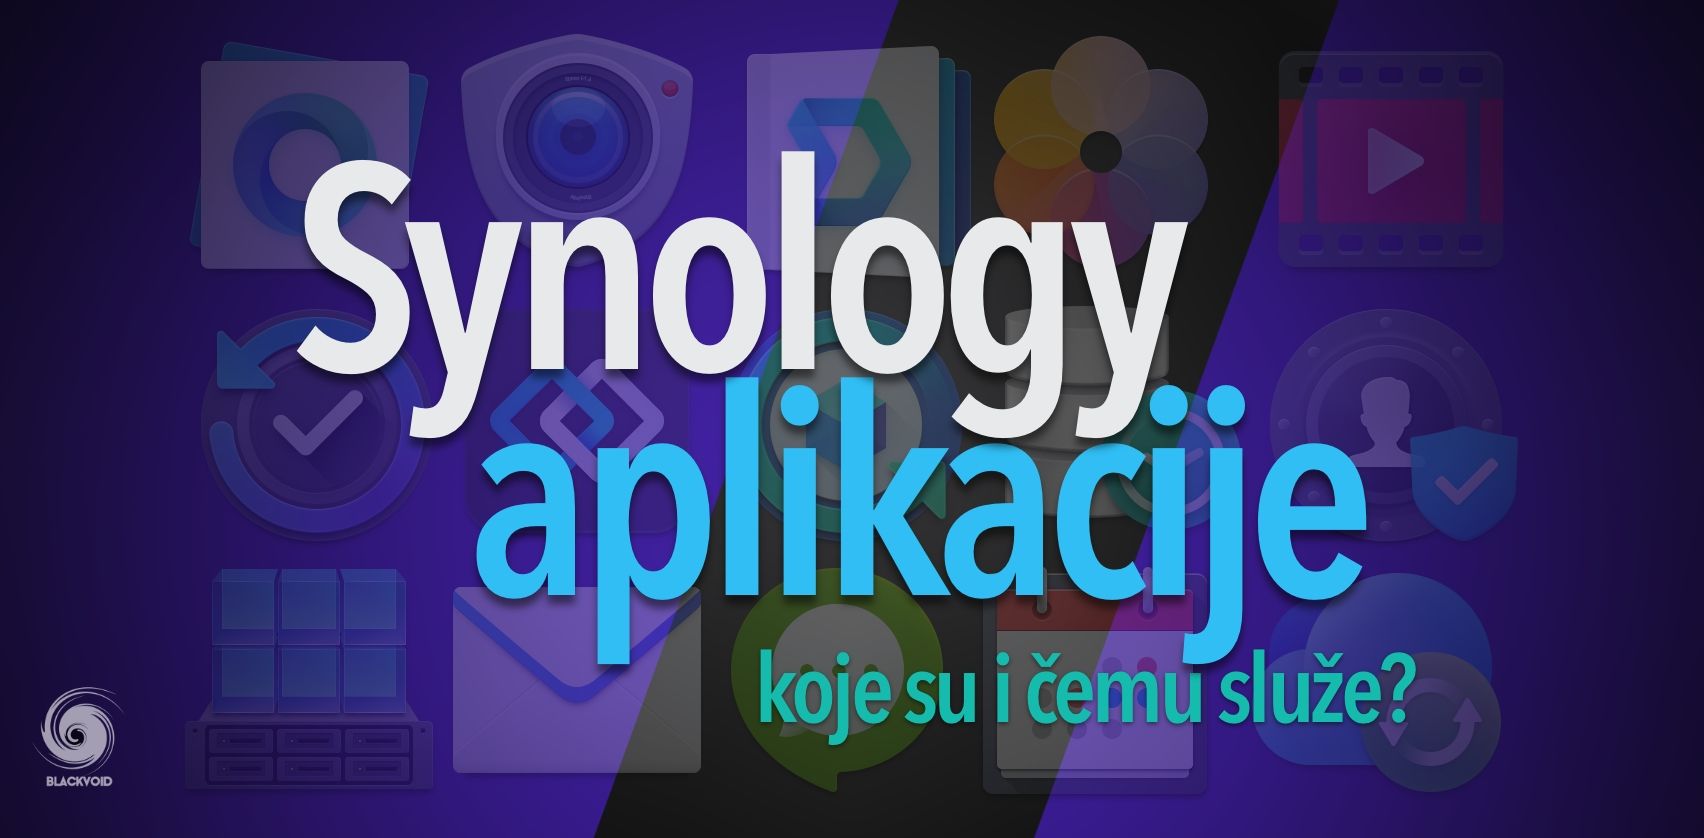 Synology aplikacije, koje su i čemu služe?